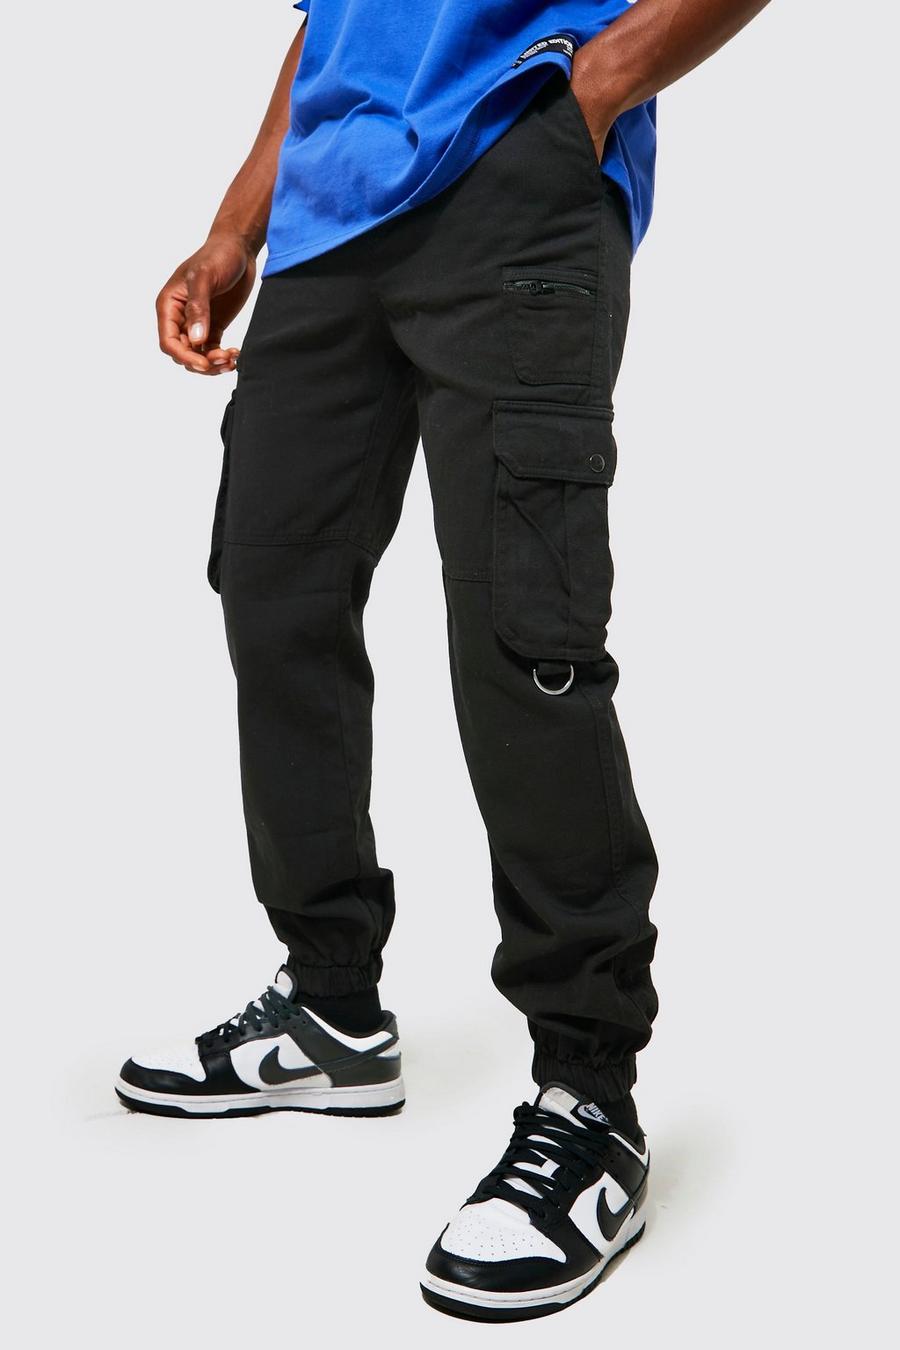 Pantaloni Cargo Slim Fit con tasche con zip, Black nero